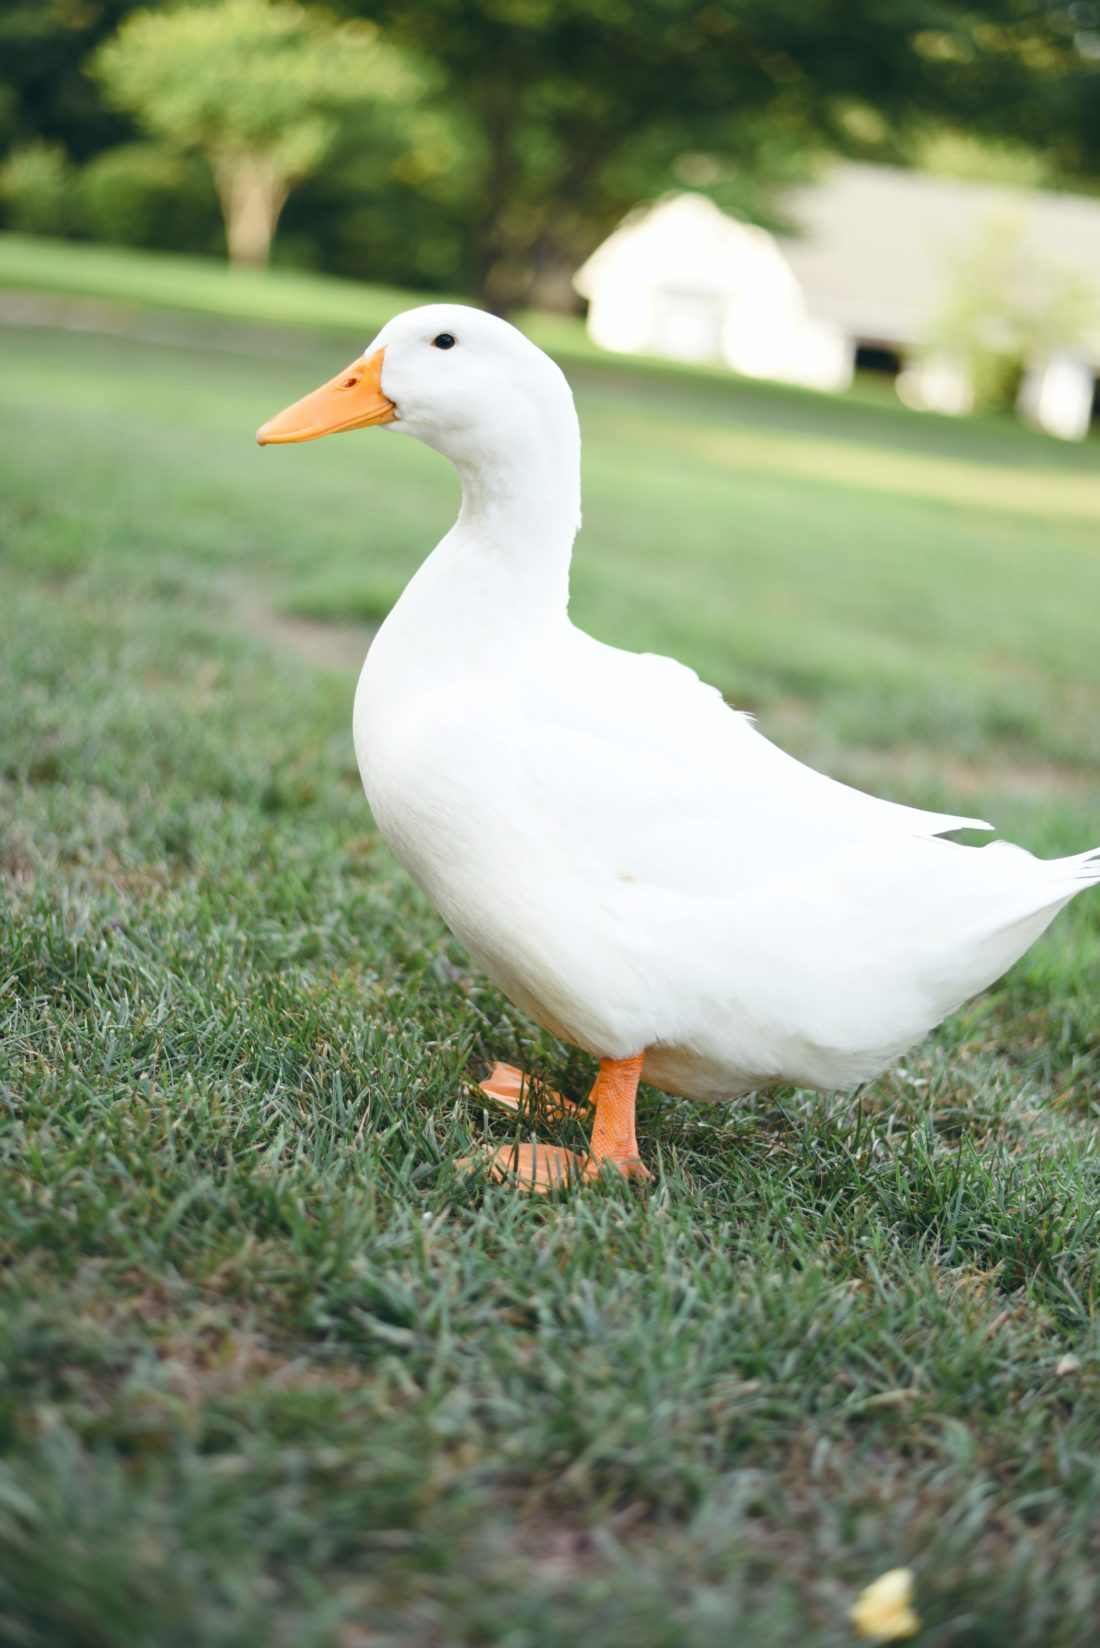 a garden duck